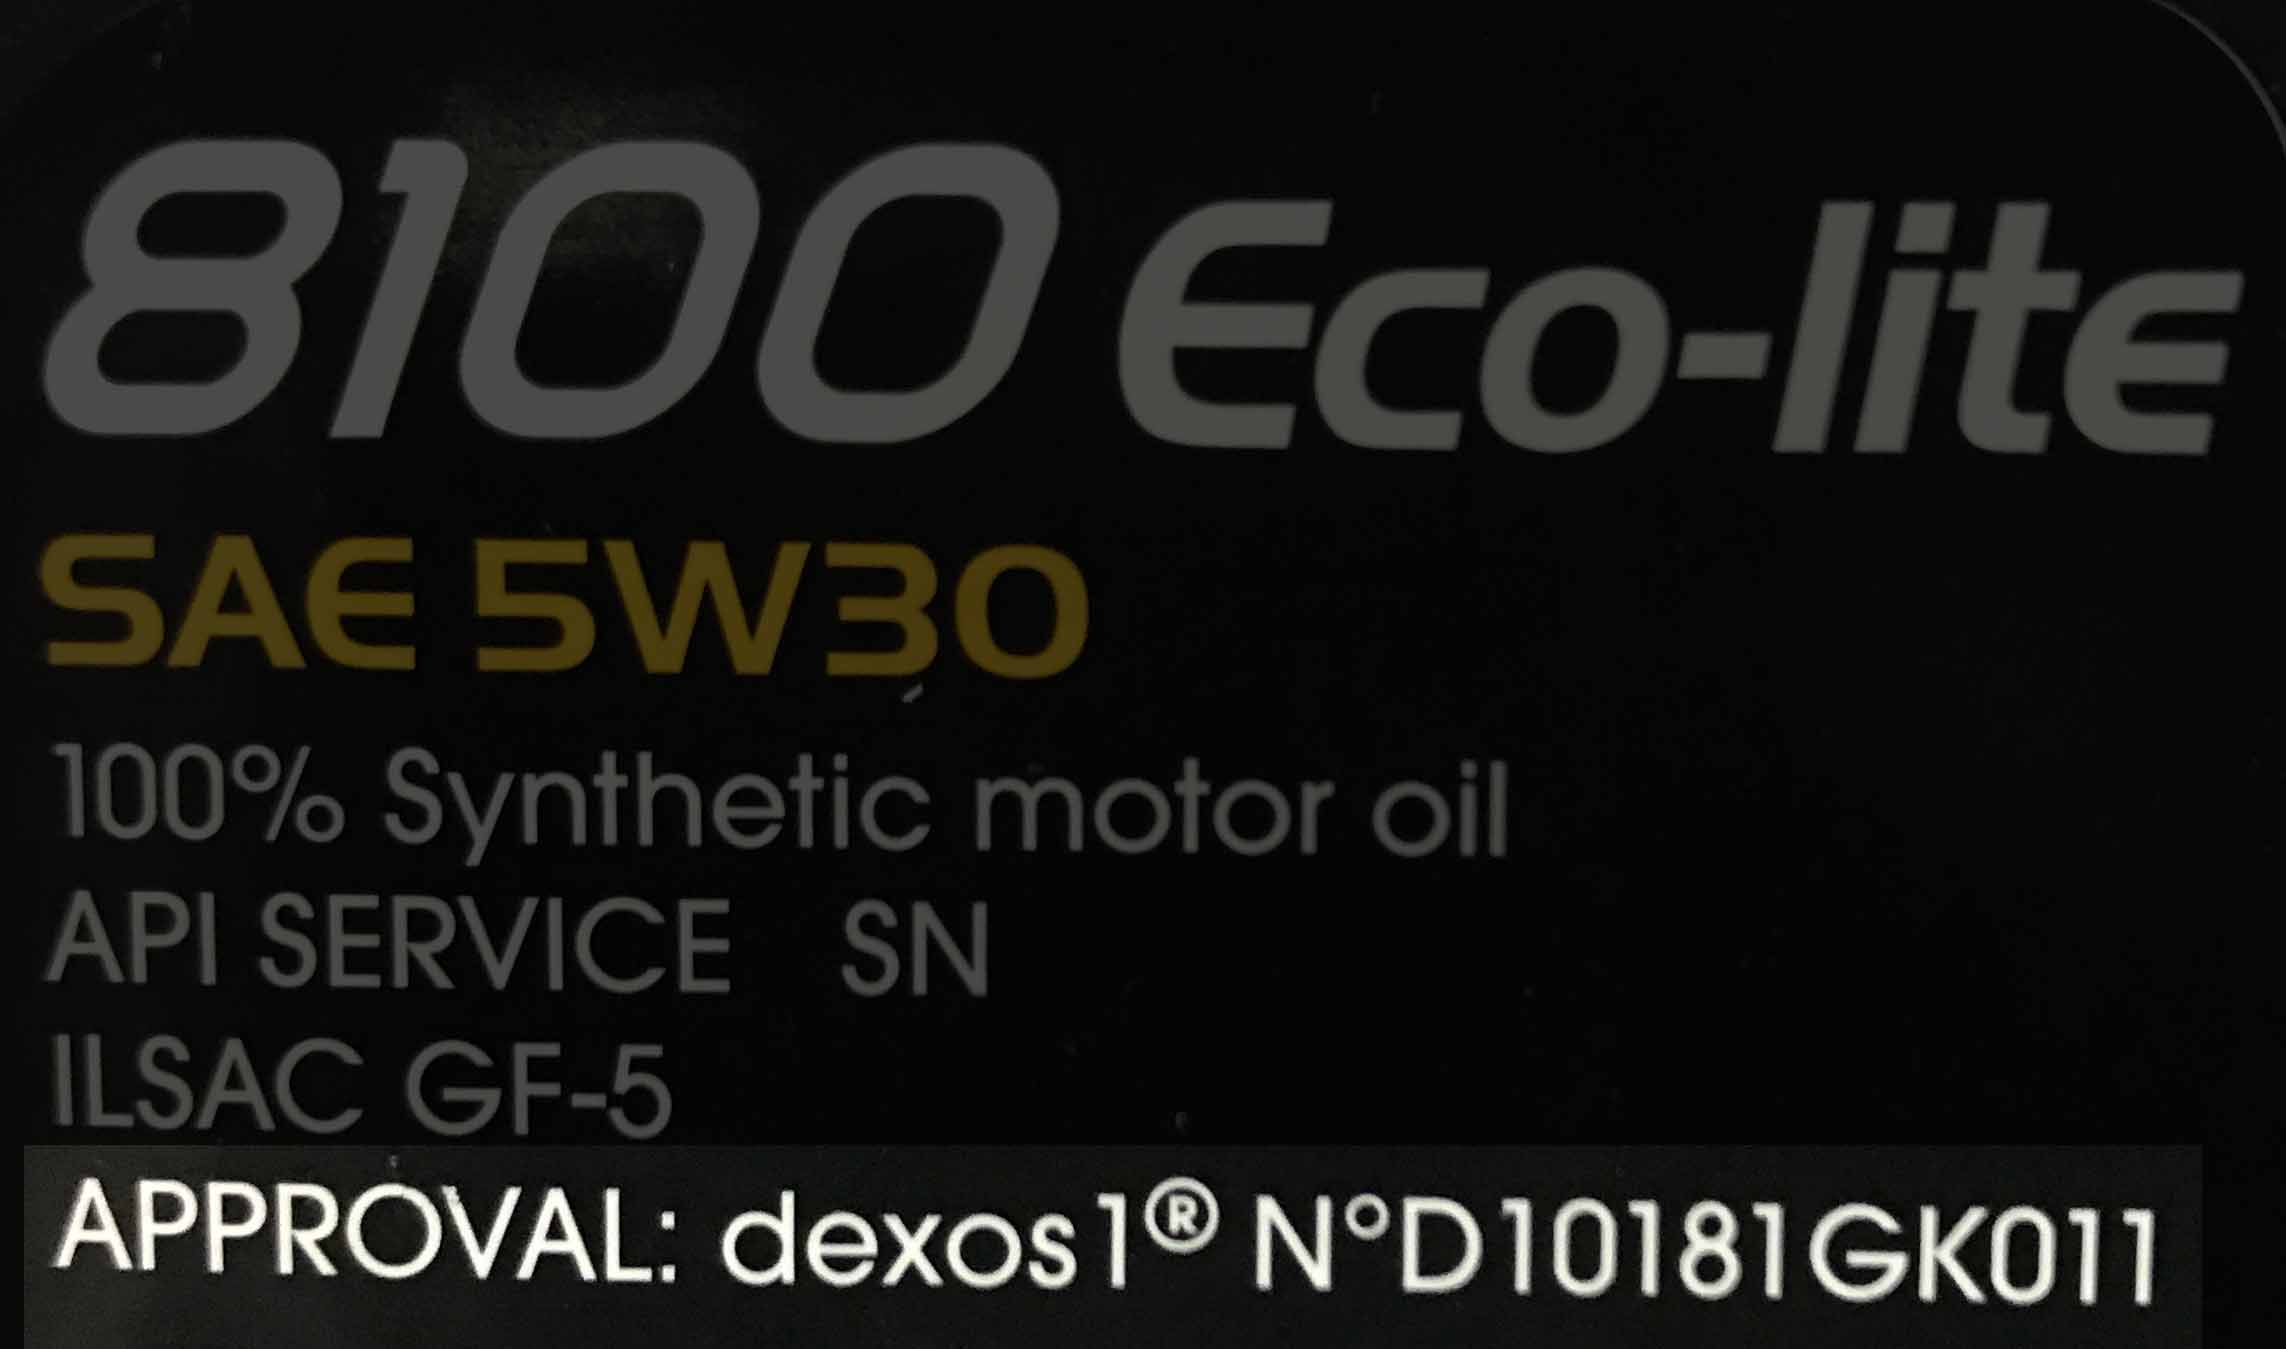 GM dexos1 - Motul 8100 eco-lite 5w30